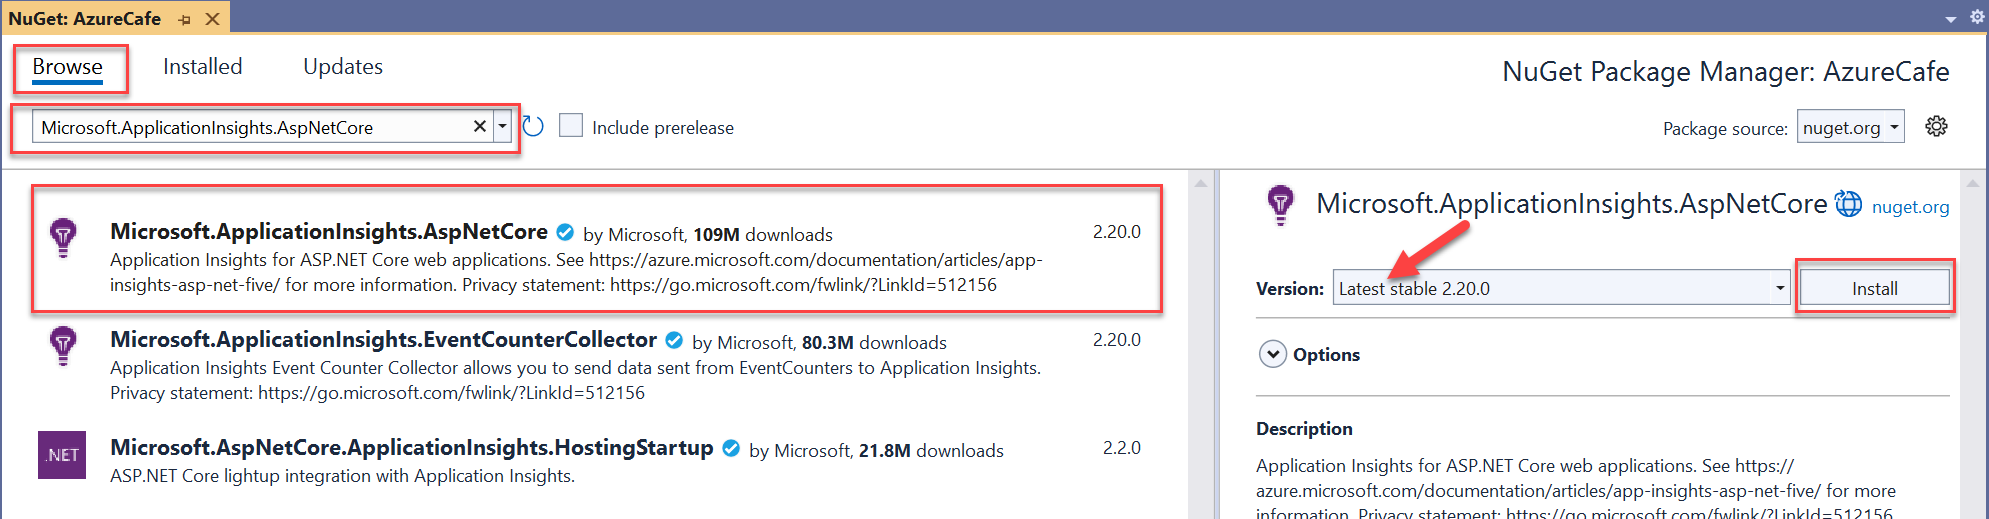 Schermopname van de gebruikersinterface van NuGet Package Manager in Visual Studio.